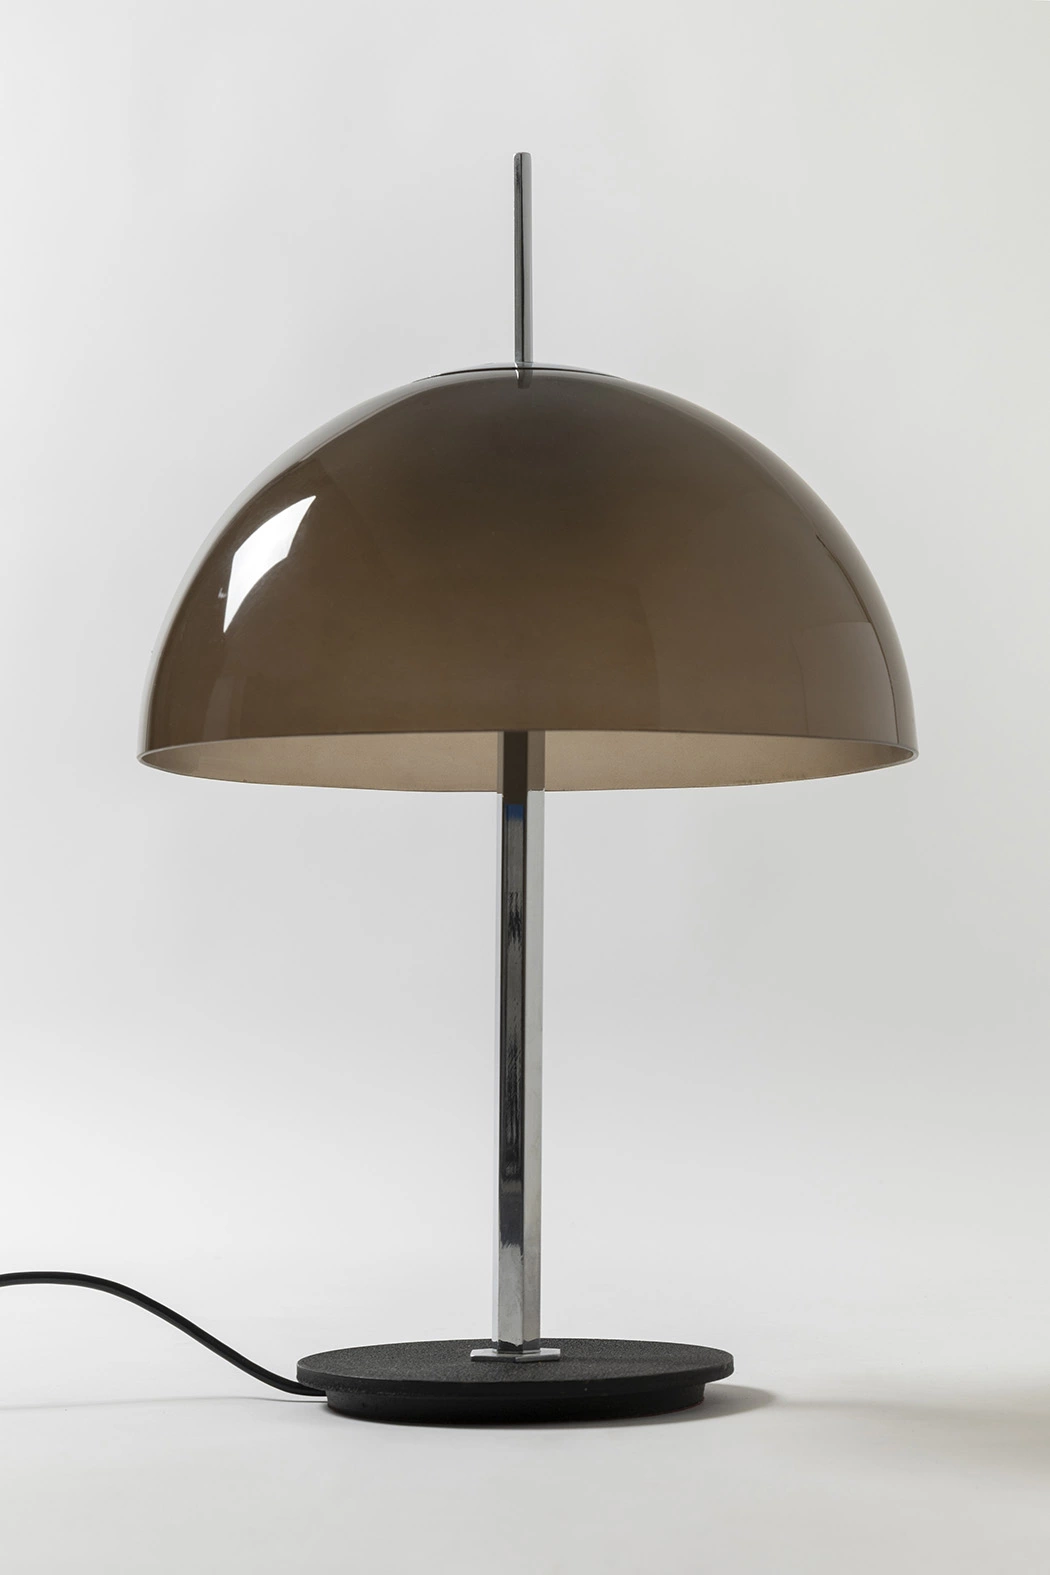 584/G (brown) - Gino Sarfatti - Table light - Galerie kreo